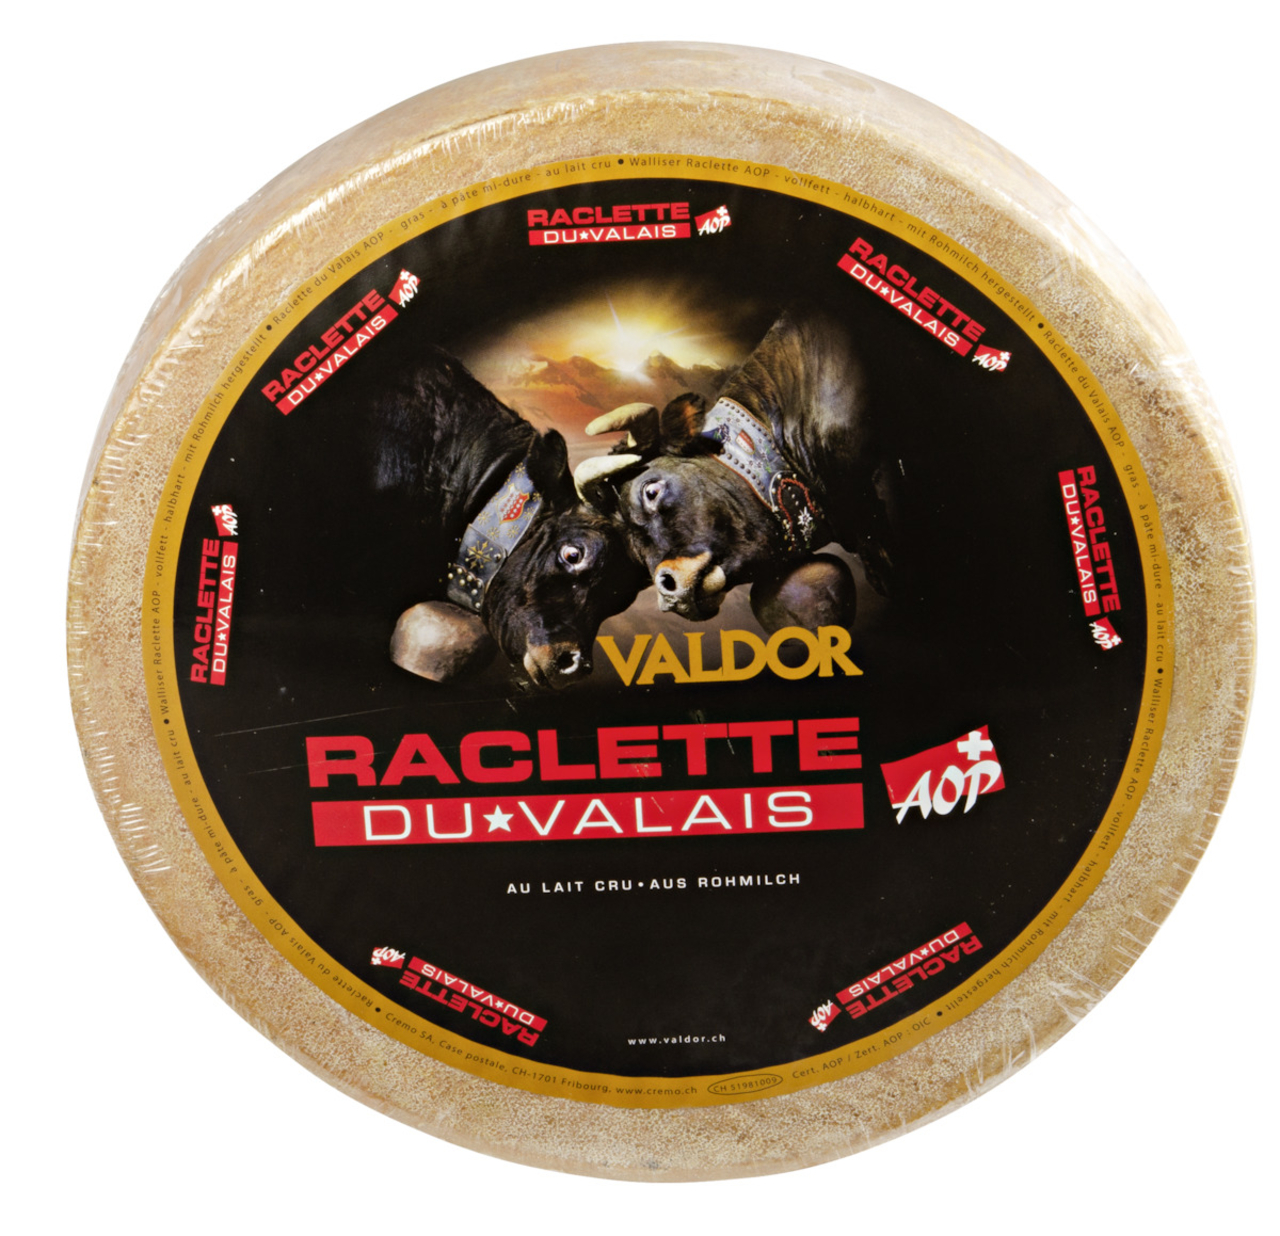 Raclette Du Valais AOP Valdor